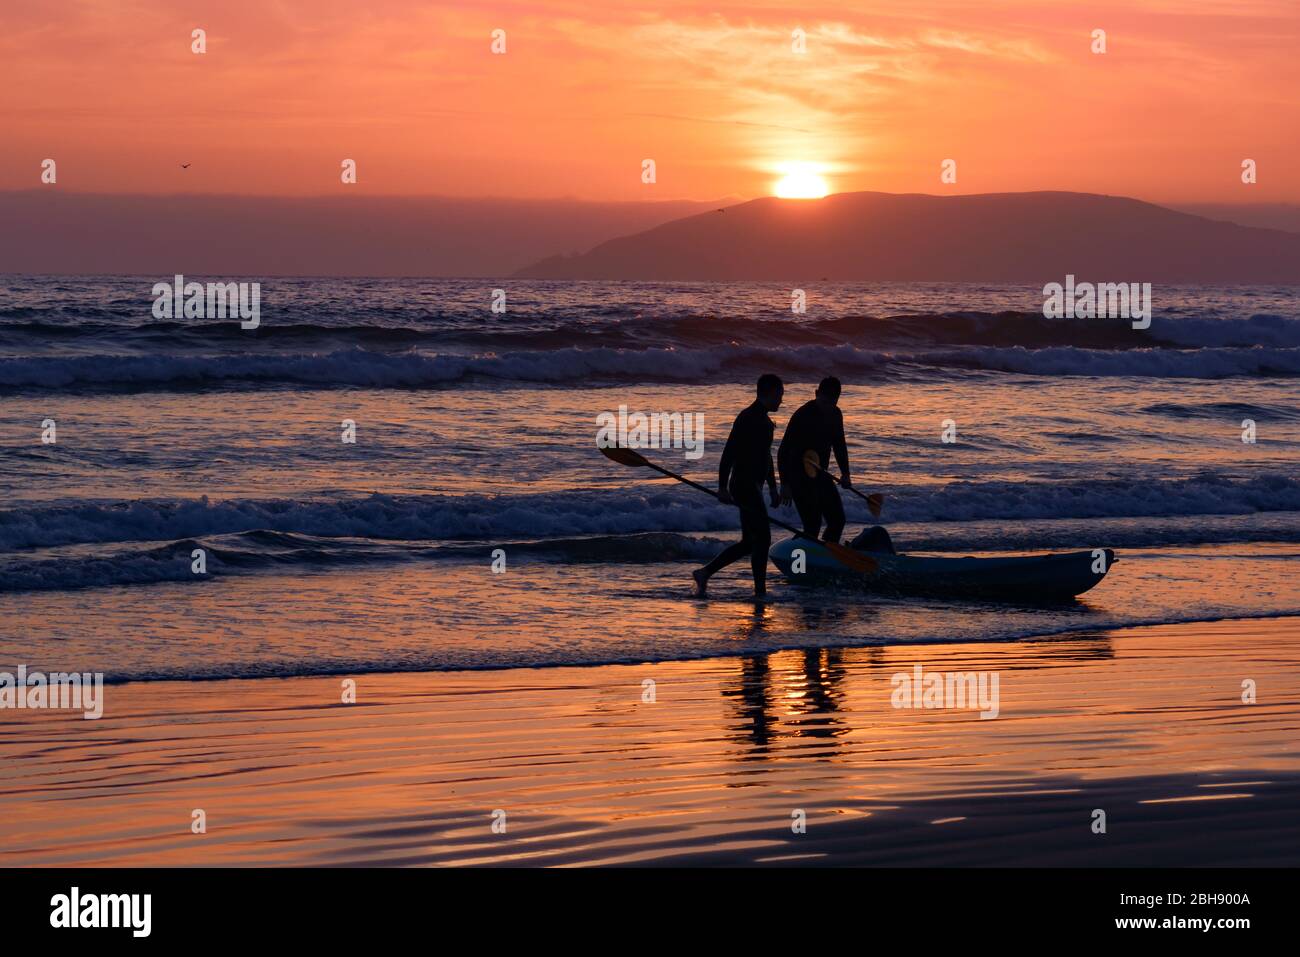 Silhouette von 2 Paddlern mit Boot am Strand bei Sonnenuntergang, im Hintergrund die Silhouette von Hügeln, die die Bucht um Pismo Beach umanden Foto de stock